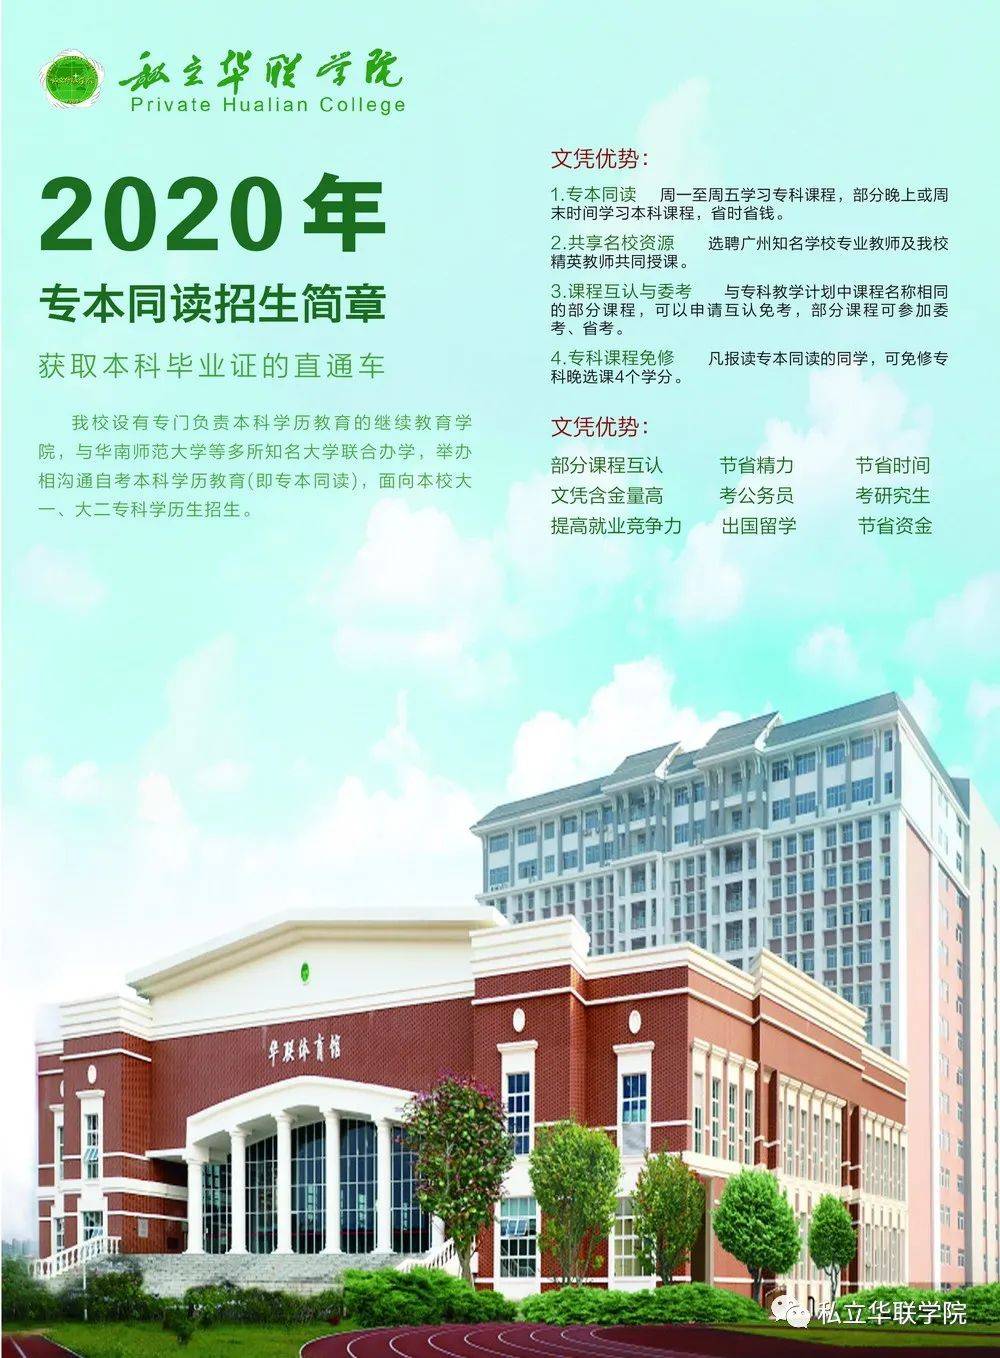 2020年私立华联学院专本同读招生简章